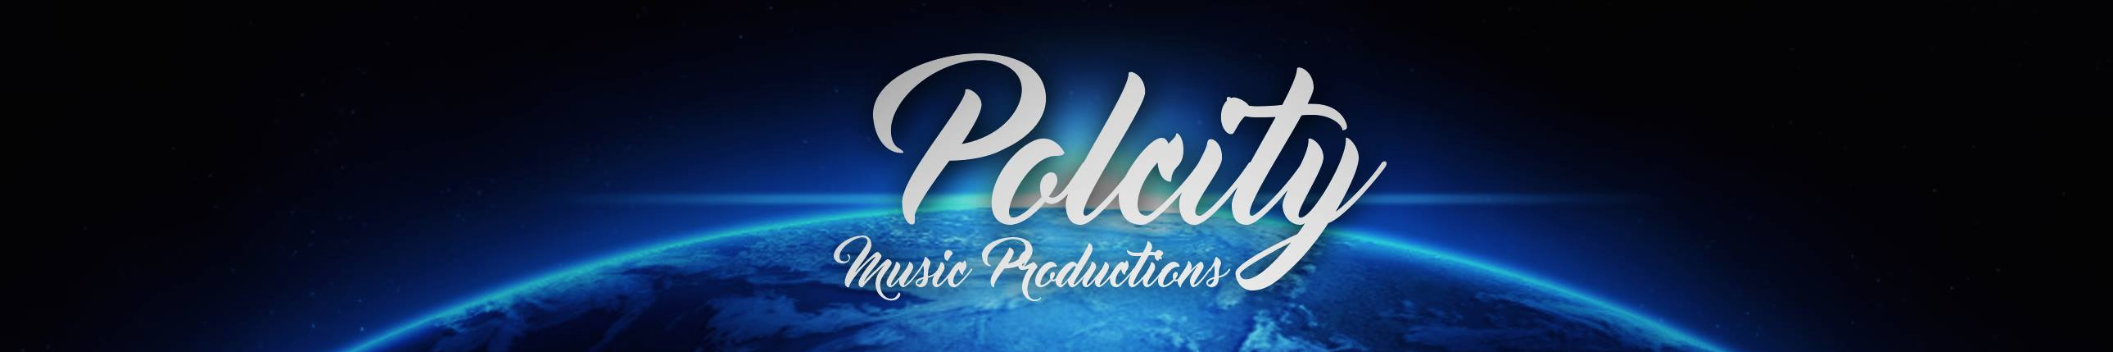 Polcity Music